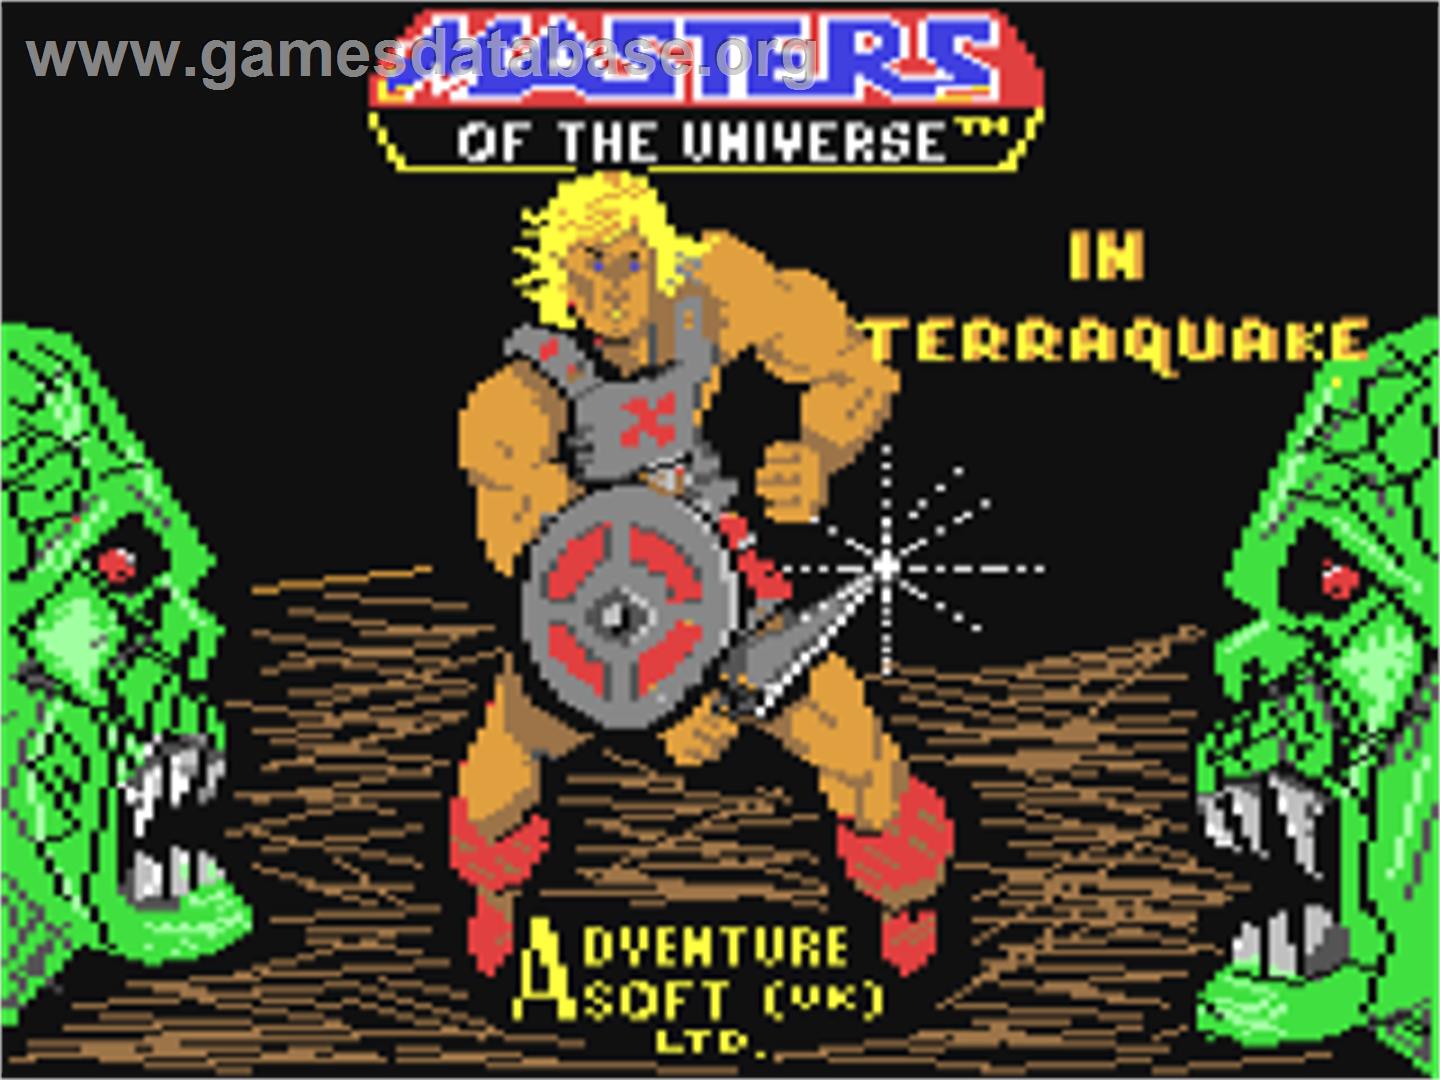 Masters of the Universe: Super Adventure - Commodore 64 - Artwork - Title Screen